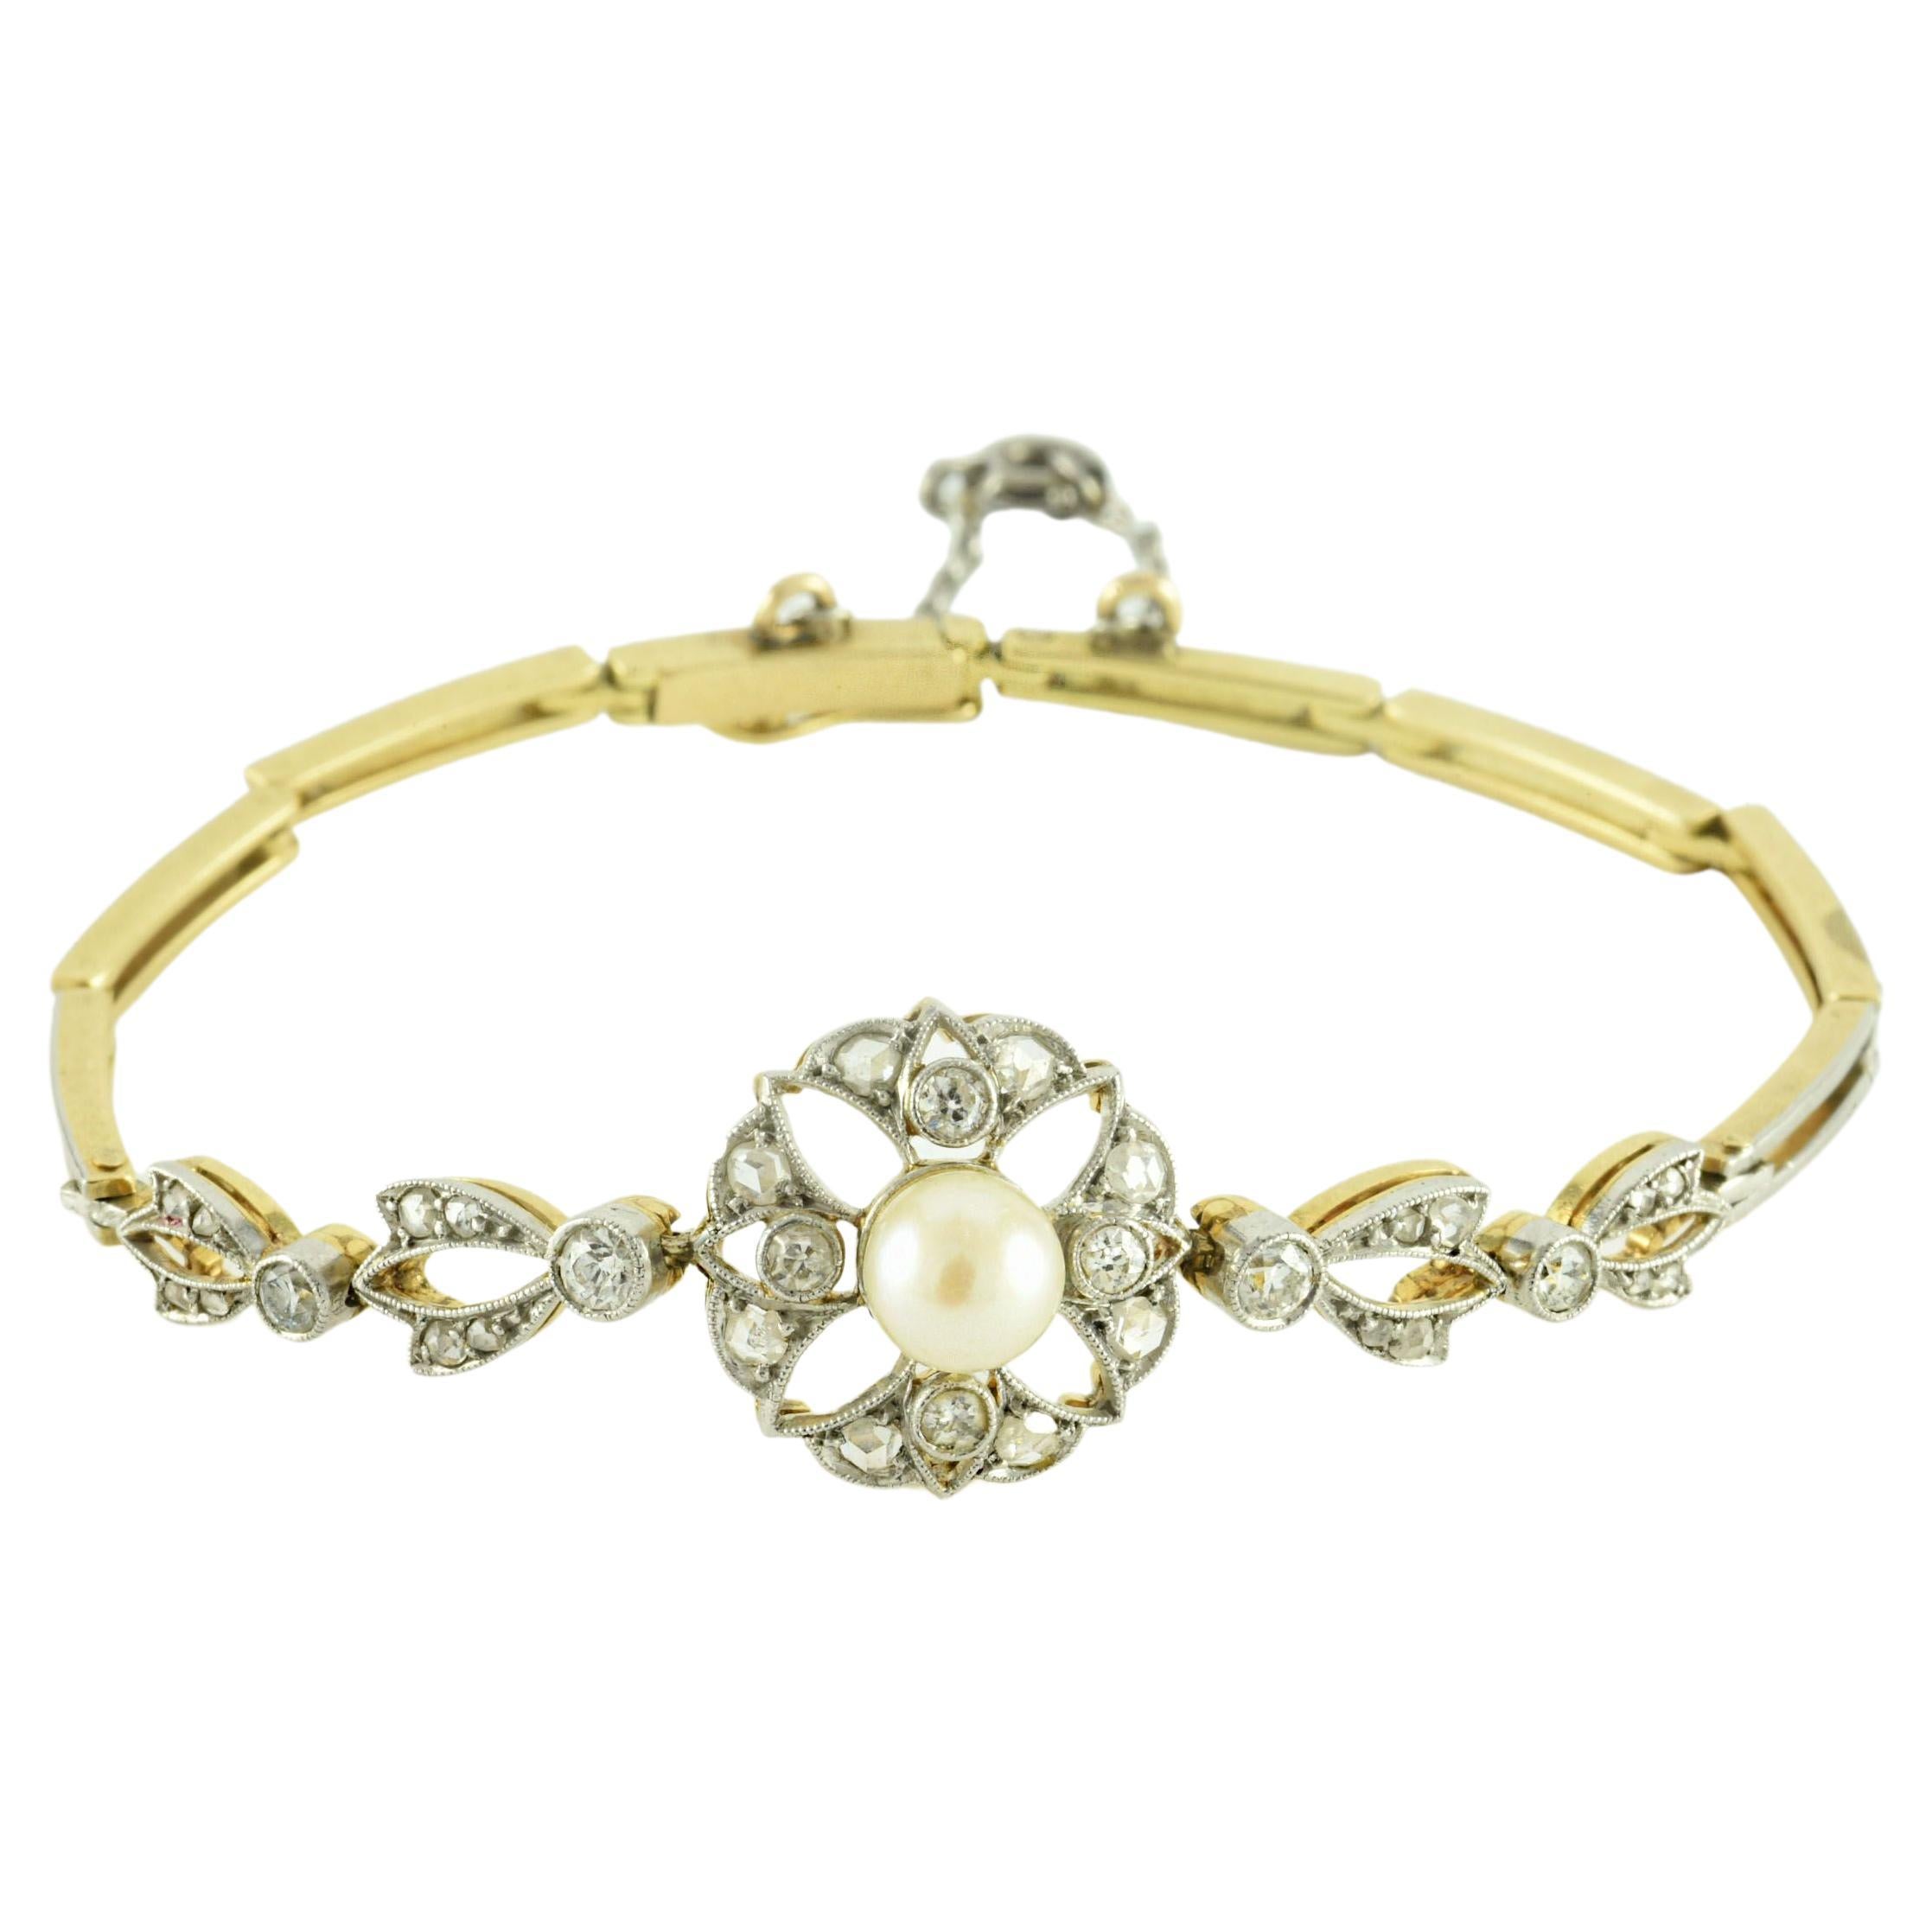 Edwardian Era White Pearl and Diamond Bracelet